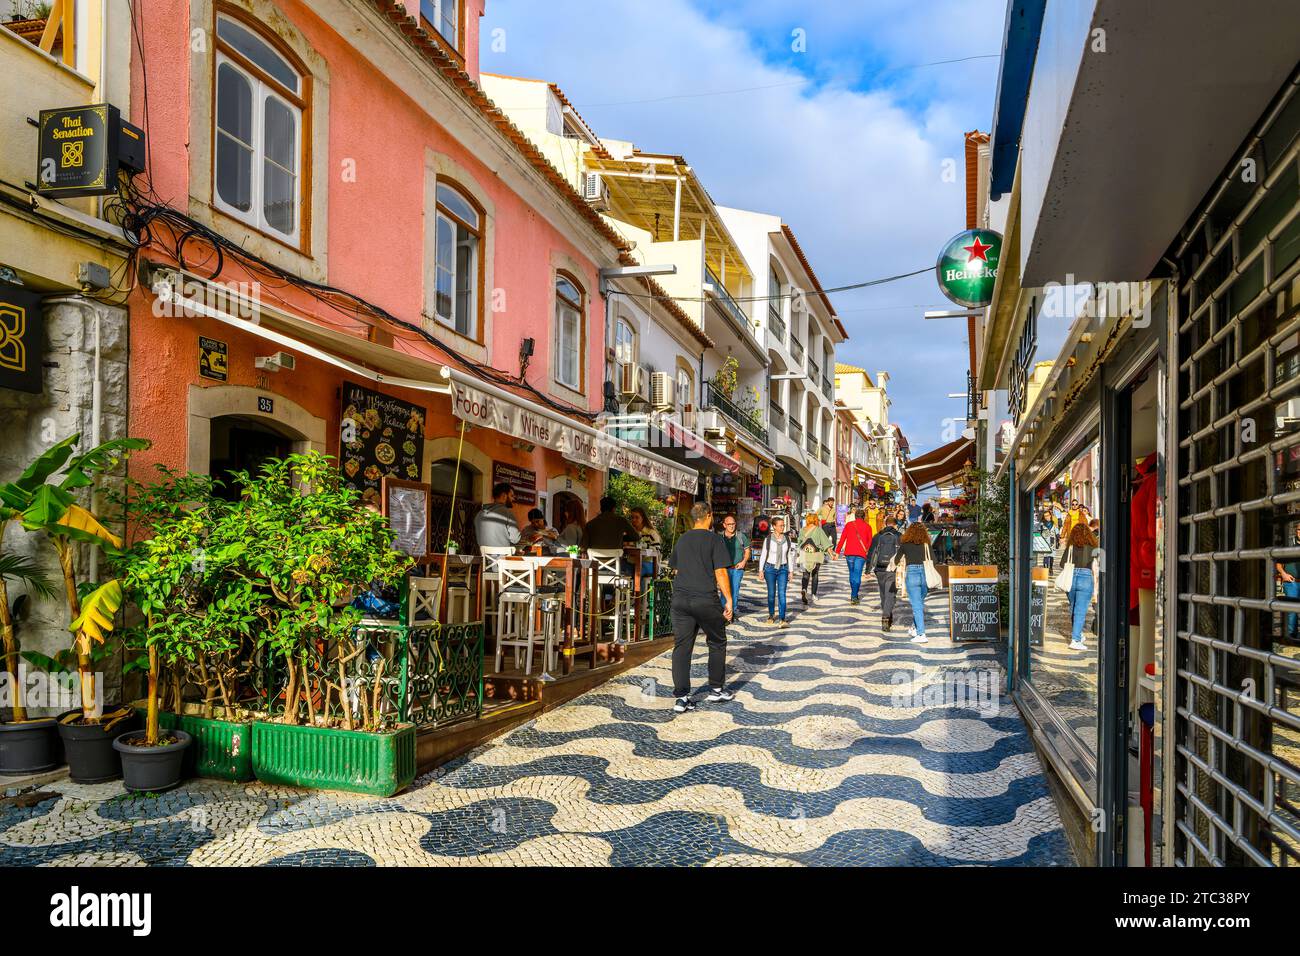 Une rue animée de boutiques et de cafés de trottoir avec des carreaux de pavé traditionnels Calcada en mosaïque dans la vieille ville de la ville balnéaire de Cascais, Portugal. Banque D'Images